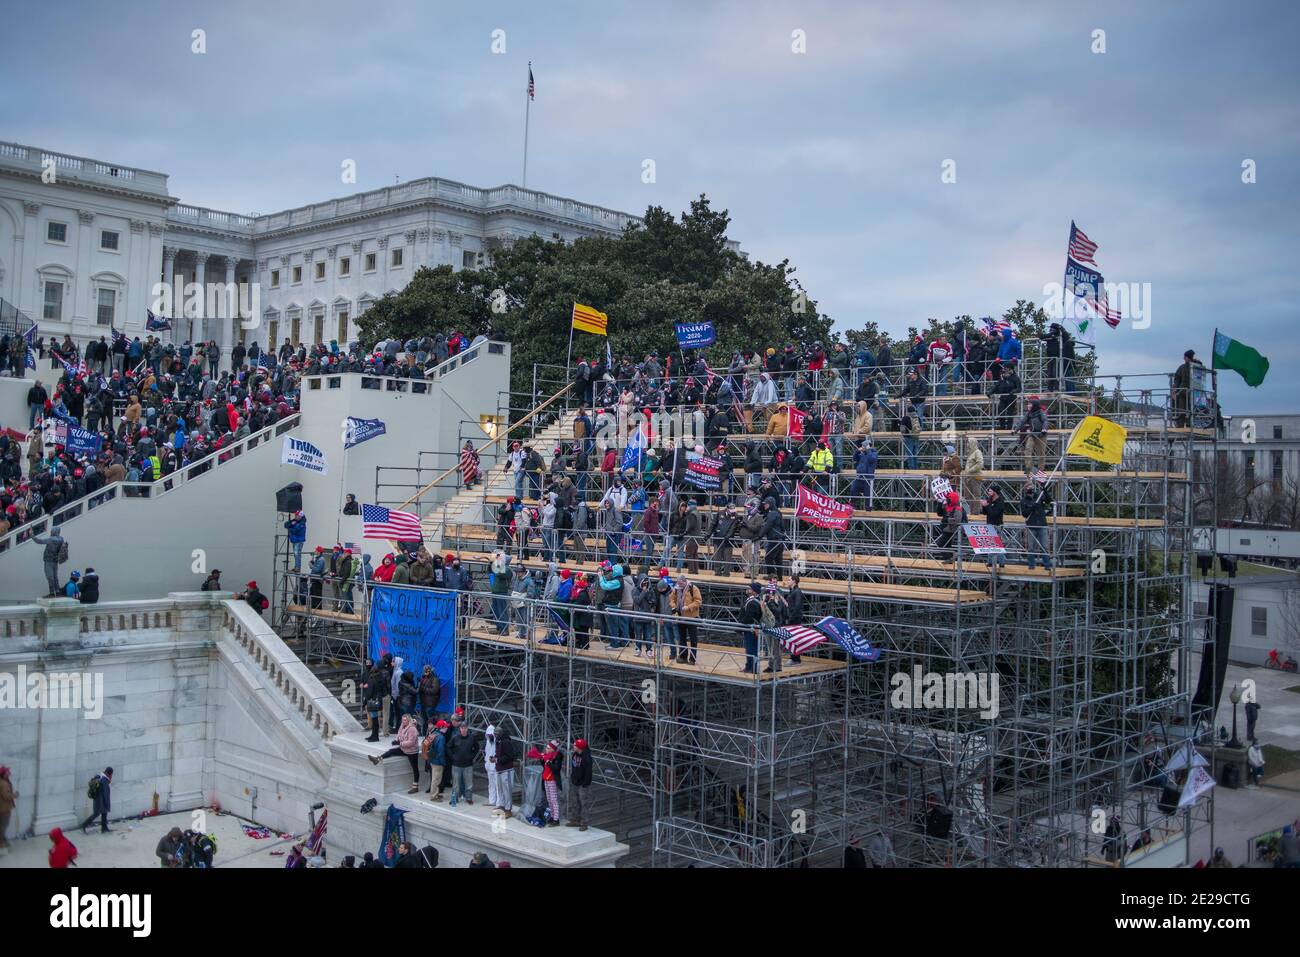 Le 6.2021 janvier, de grandes foules de partisans du président Trump descendent dans le Capitole après la marche de Save America. Capitol Hill, Washington DC États-Unis Banque D'Images